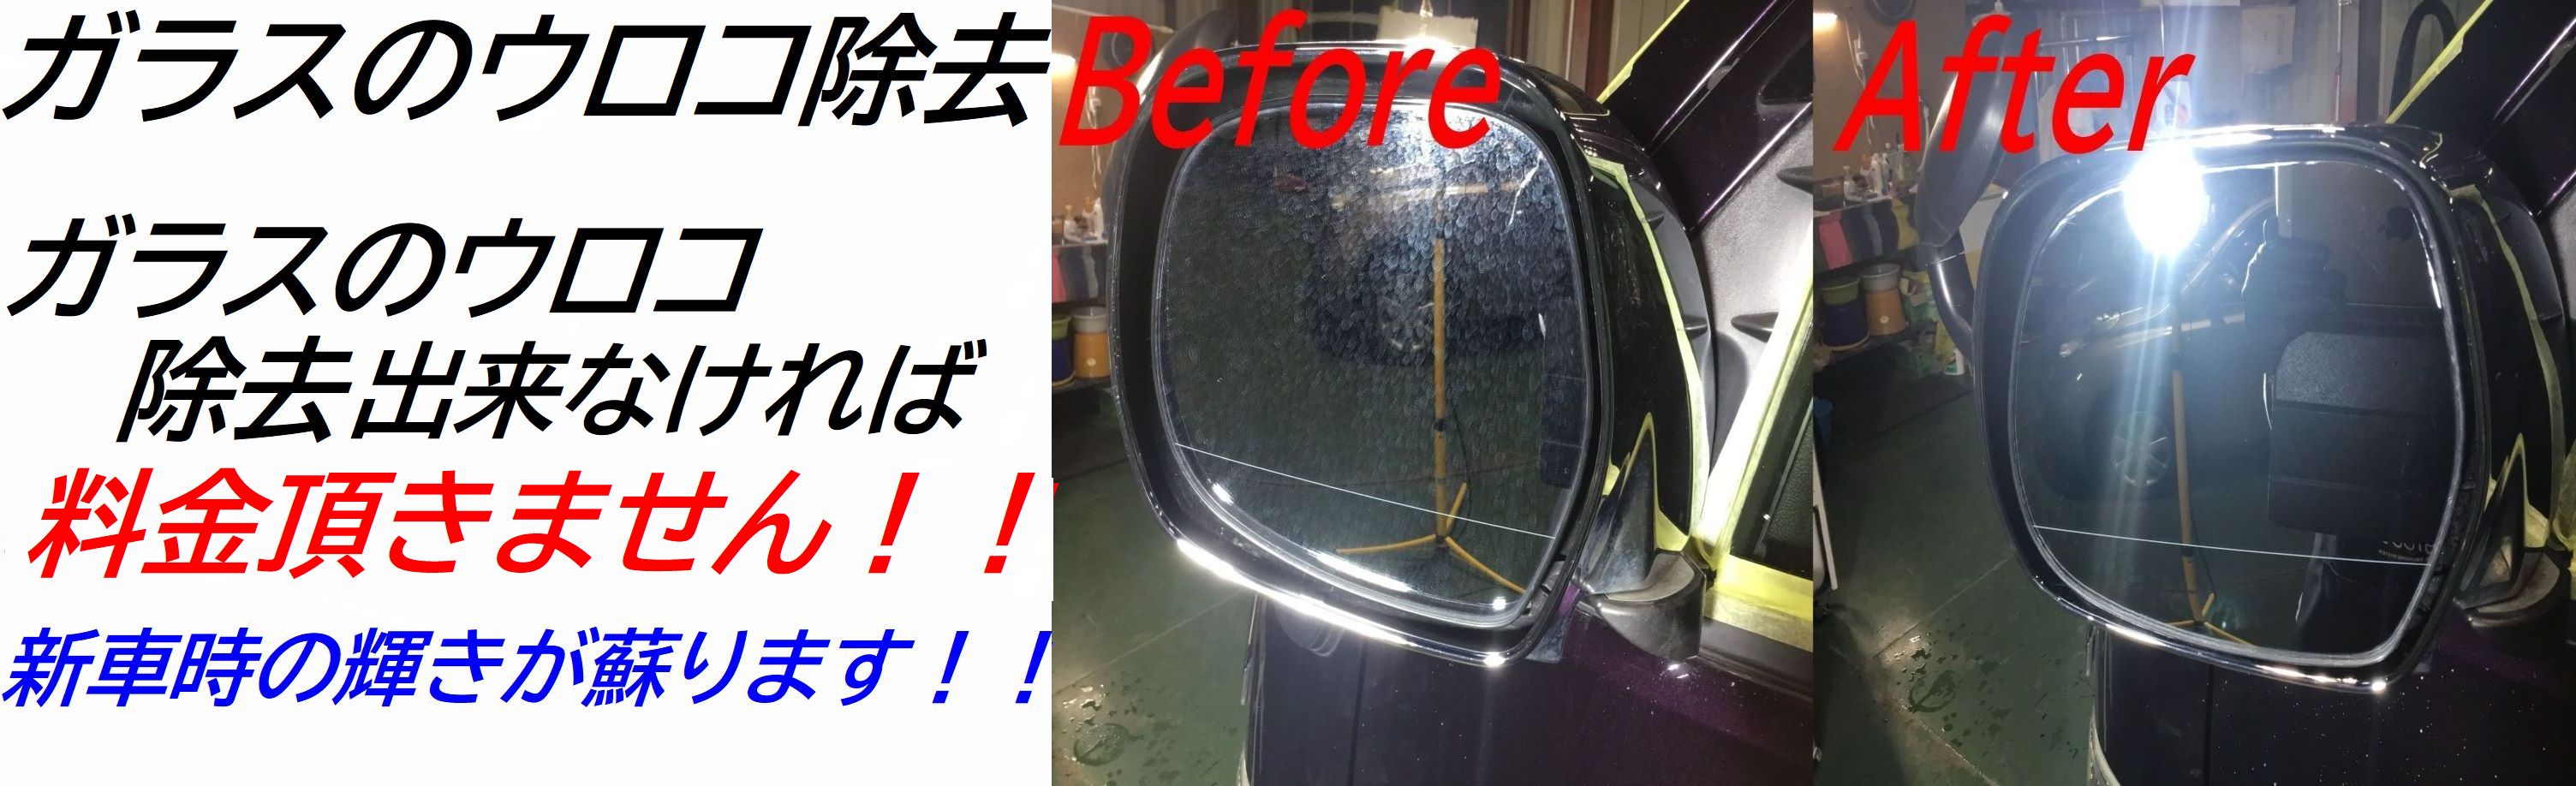 名古屋市 車フロントガラス修理専門 1箇所 半額7500円 税別